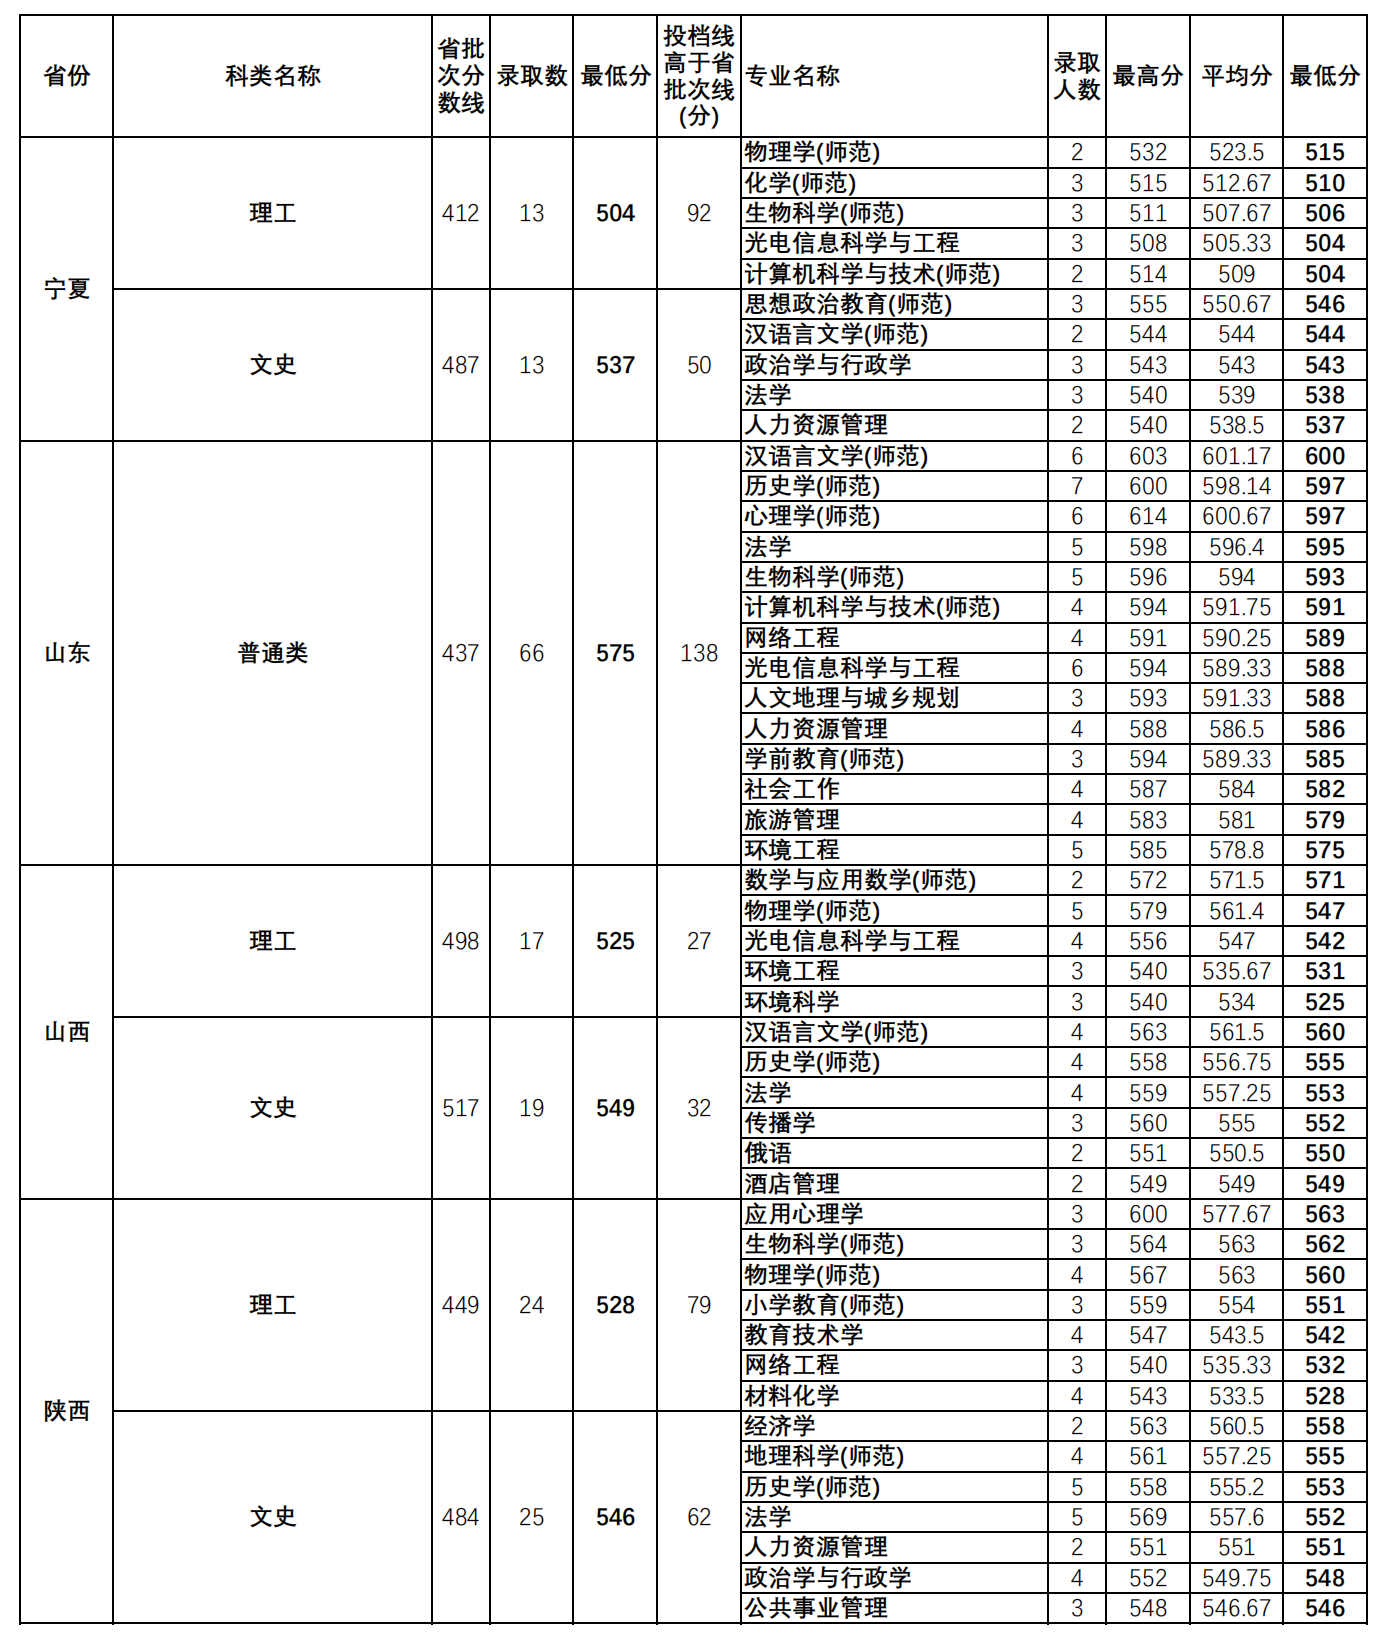 华南师范大学2022年外省(直辖市、自治区）各专业录取分数统计表